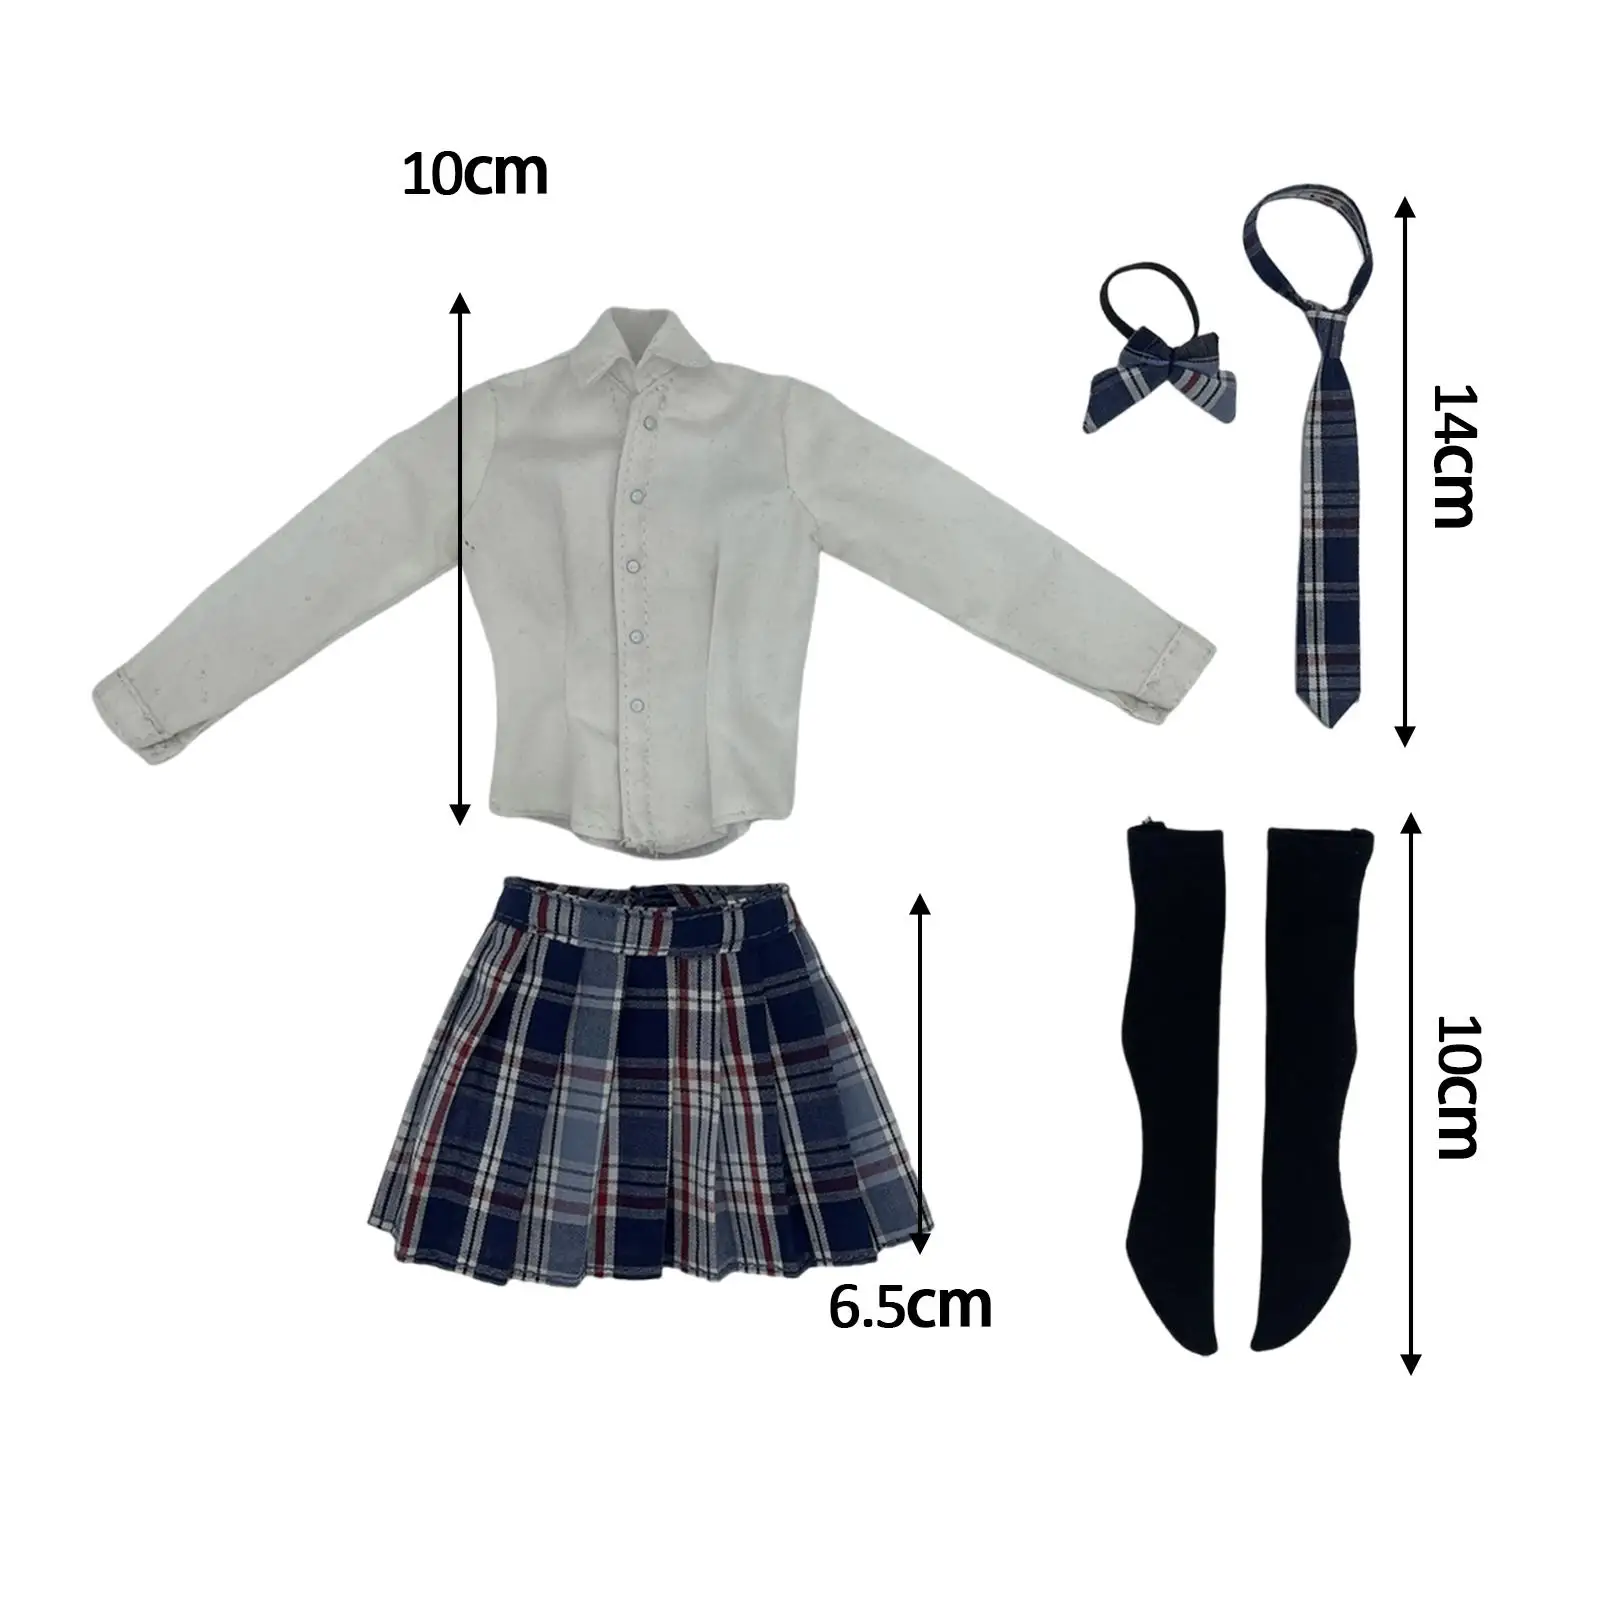 1/6 School Uniform Set JK Suit for 12`` inch Female Action Figures Accessory